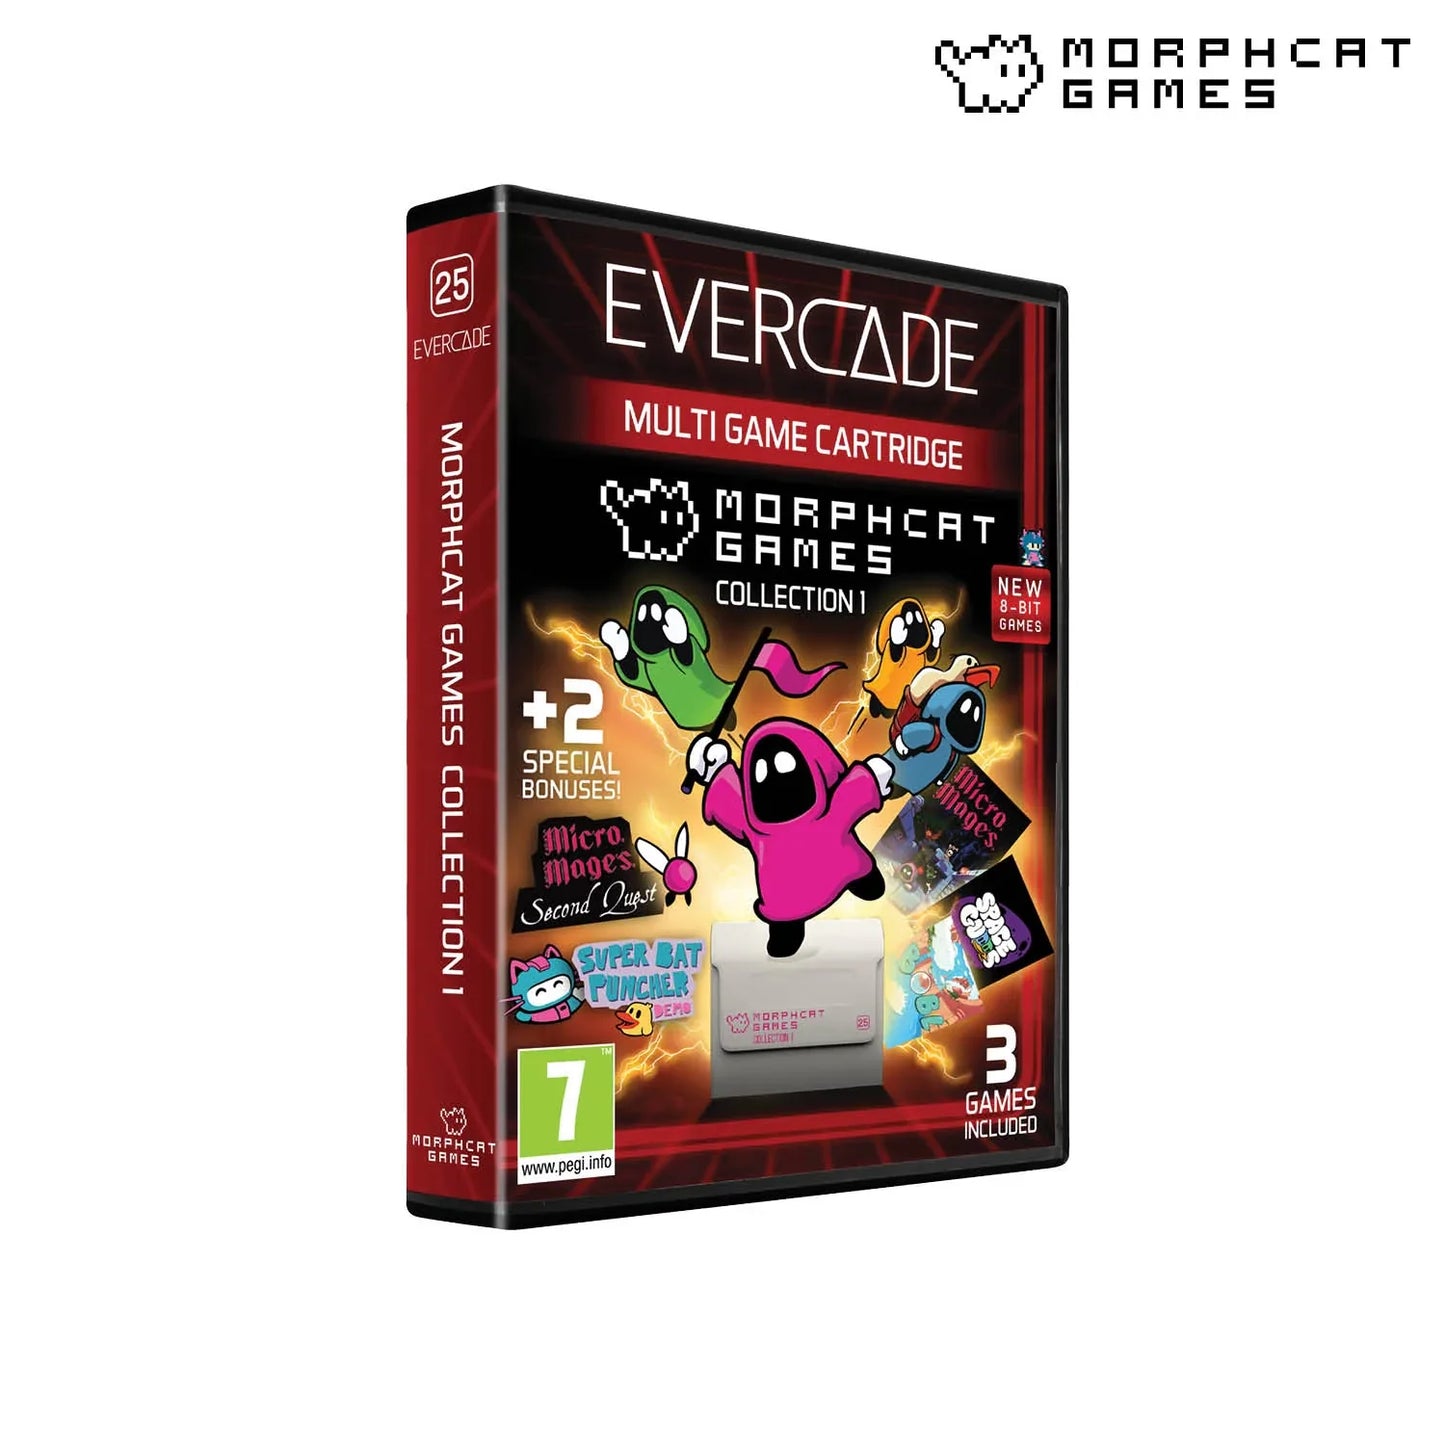 Evercade Morphcat Collection 1 - CastleMania Games